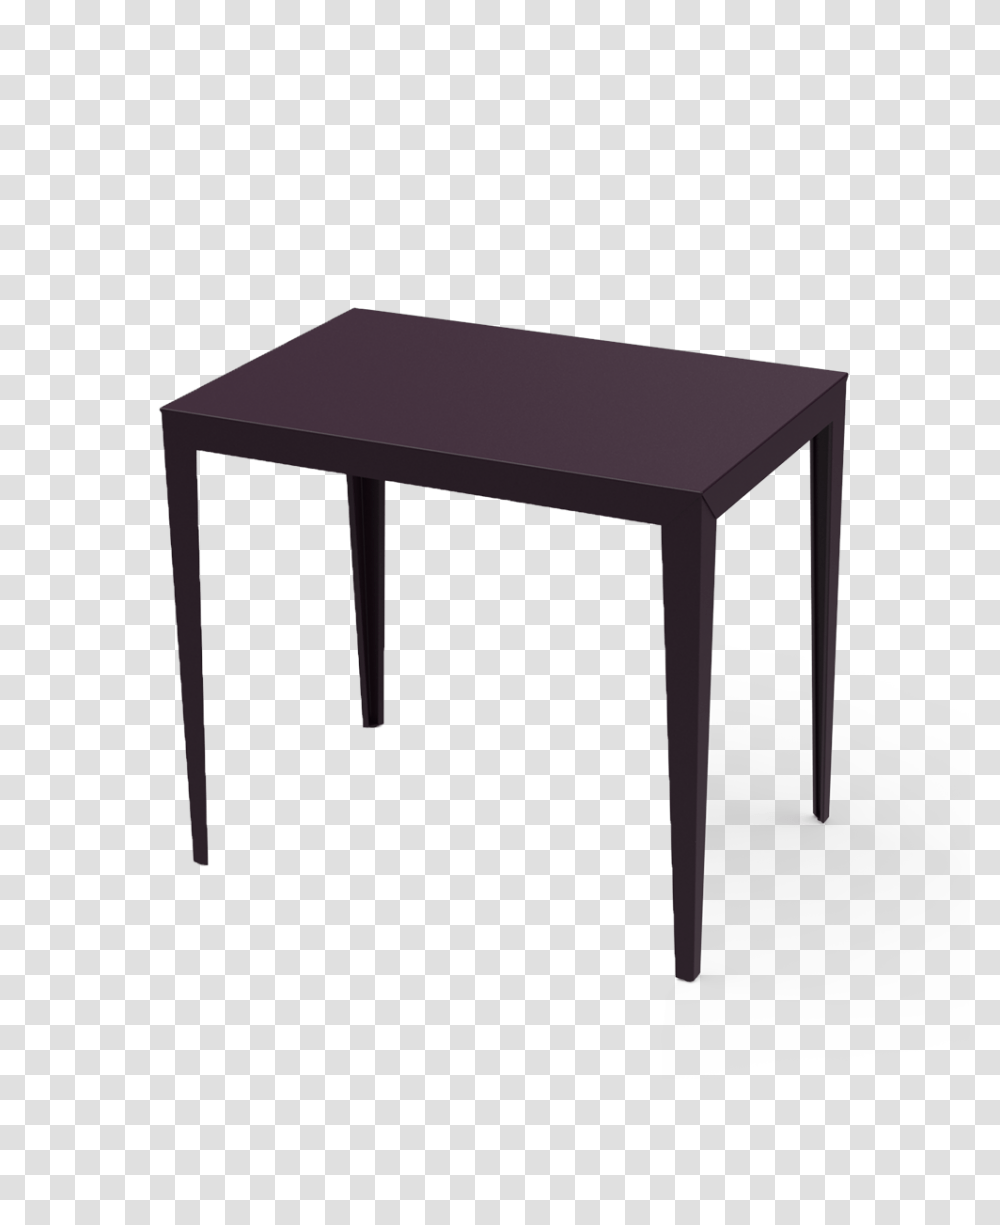 Zef Rectangle Bar Table, Furniture, Tabletop, Desk, Dining Table Transparent Png